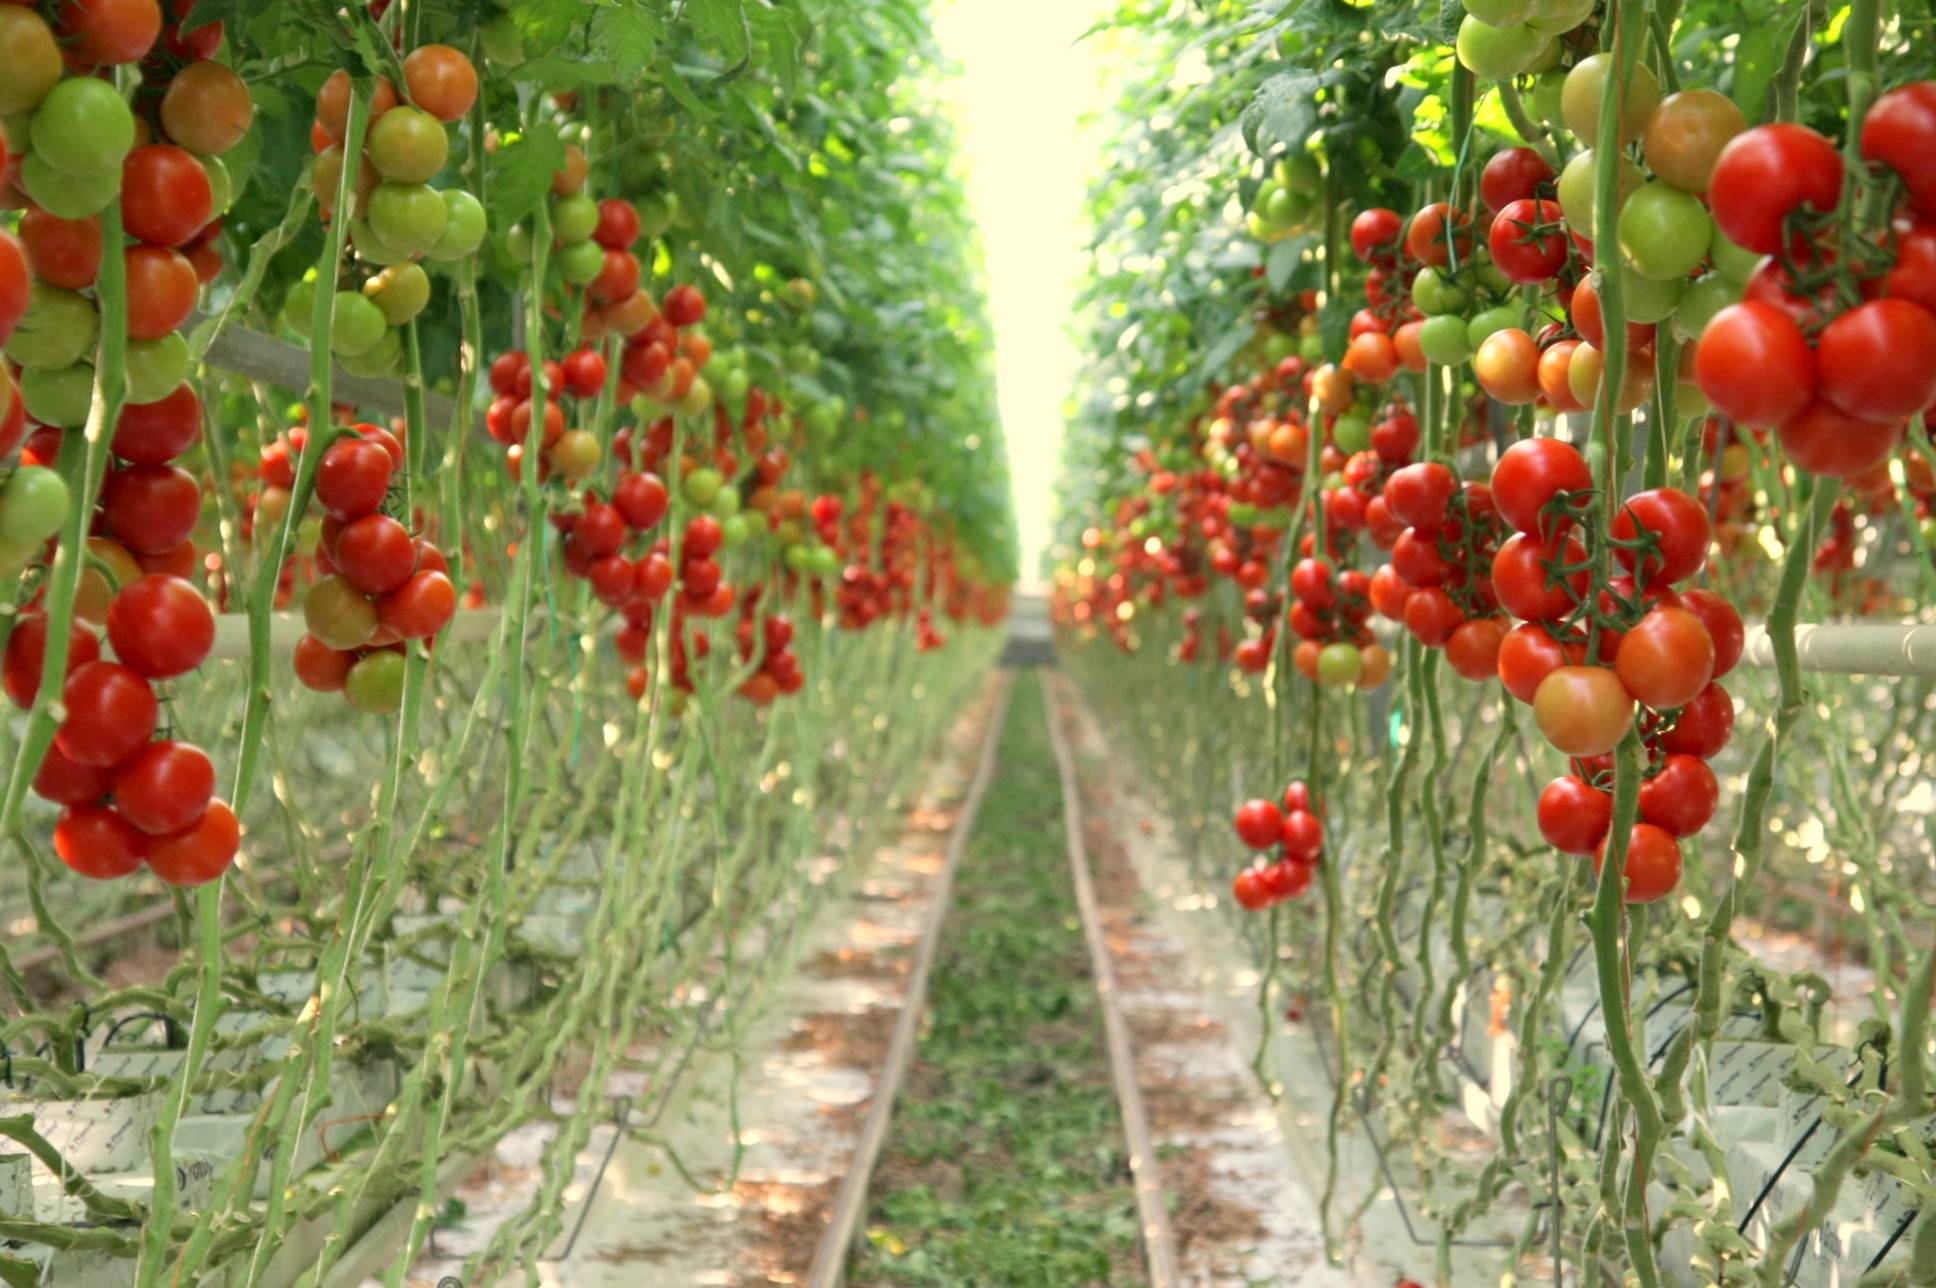 Голландская технология выращивания томатов: в теплице и открытом грунте – уход, рассада, высадка, температуры, полив, подкормка